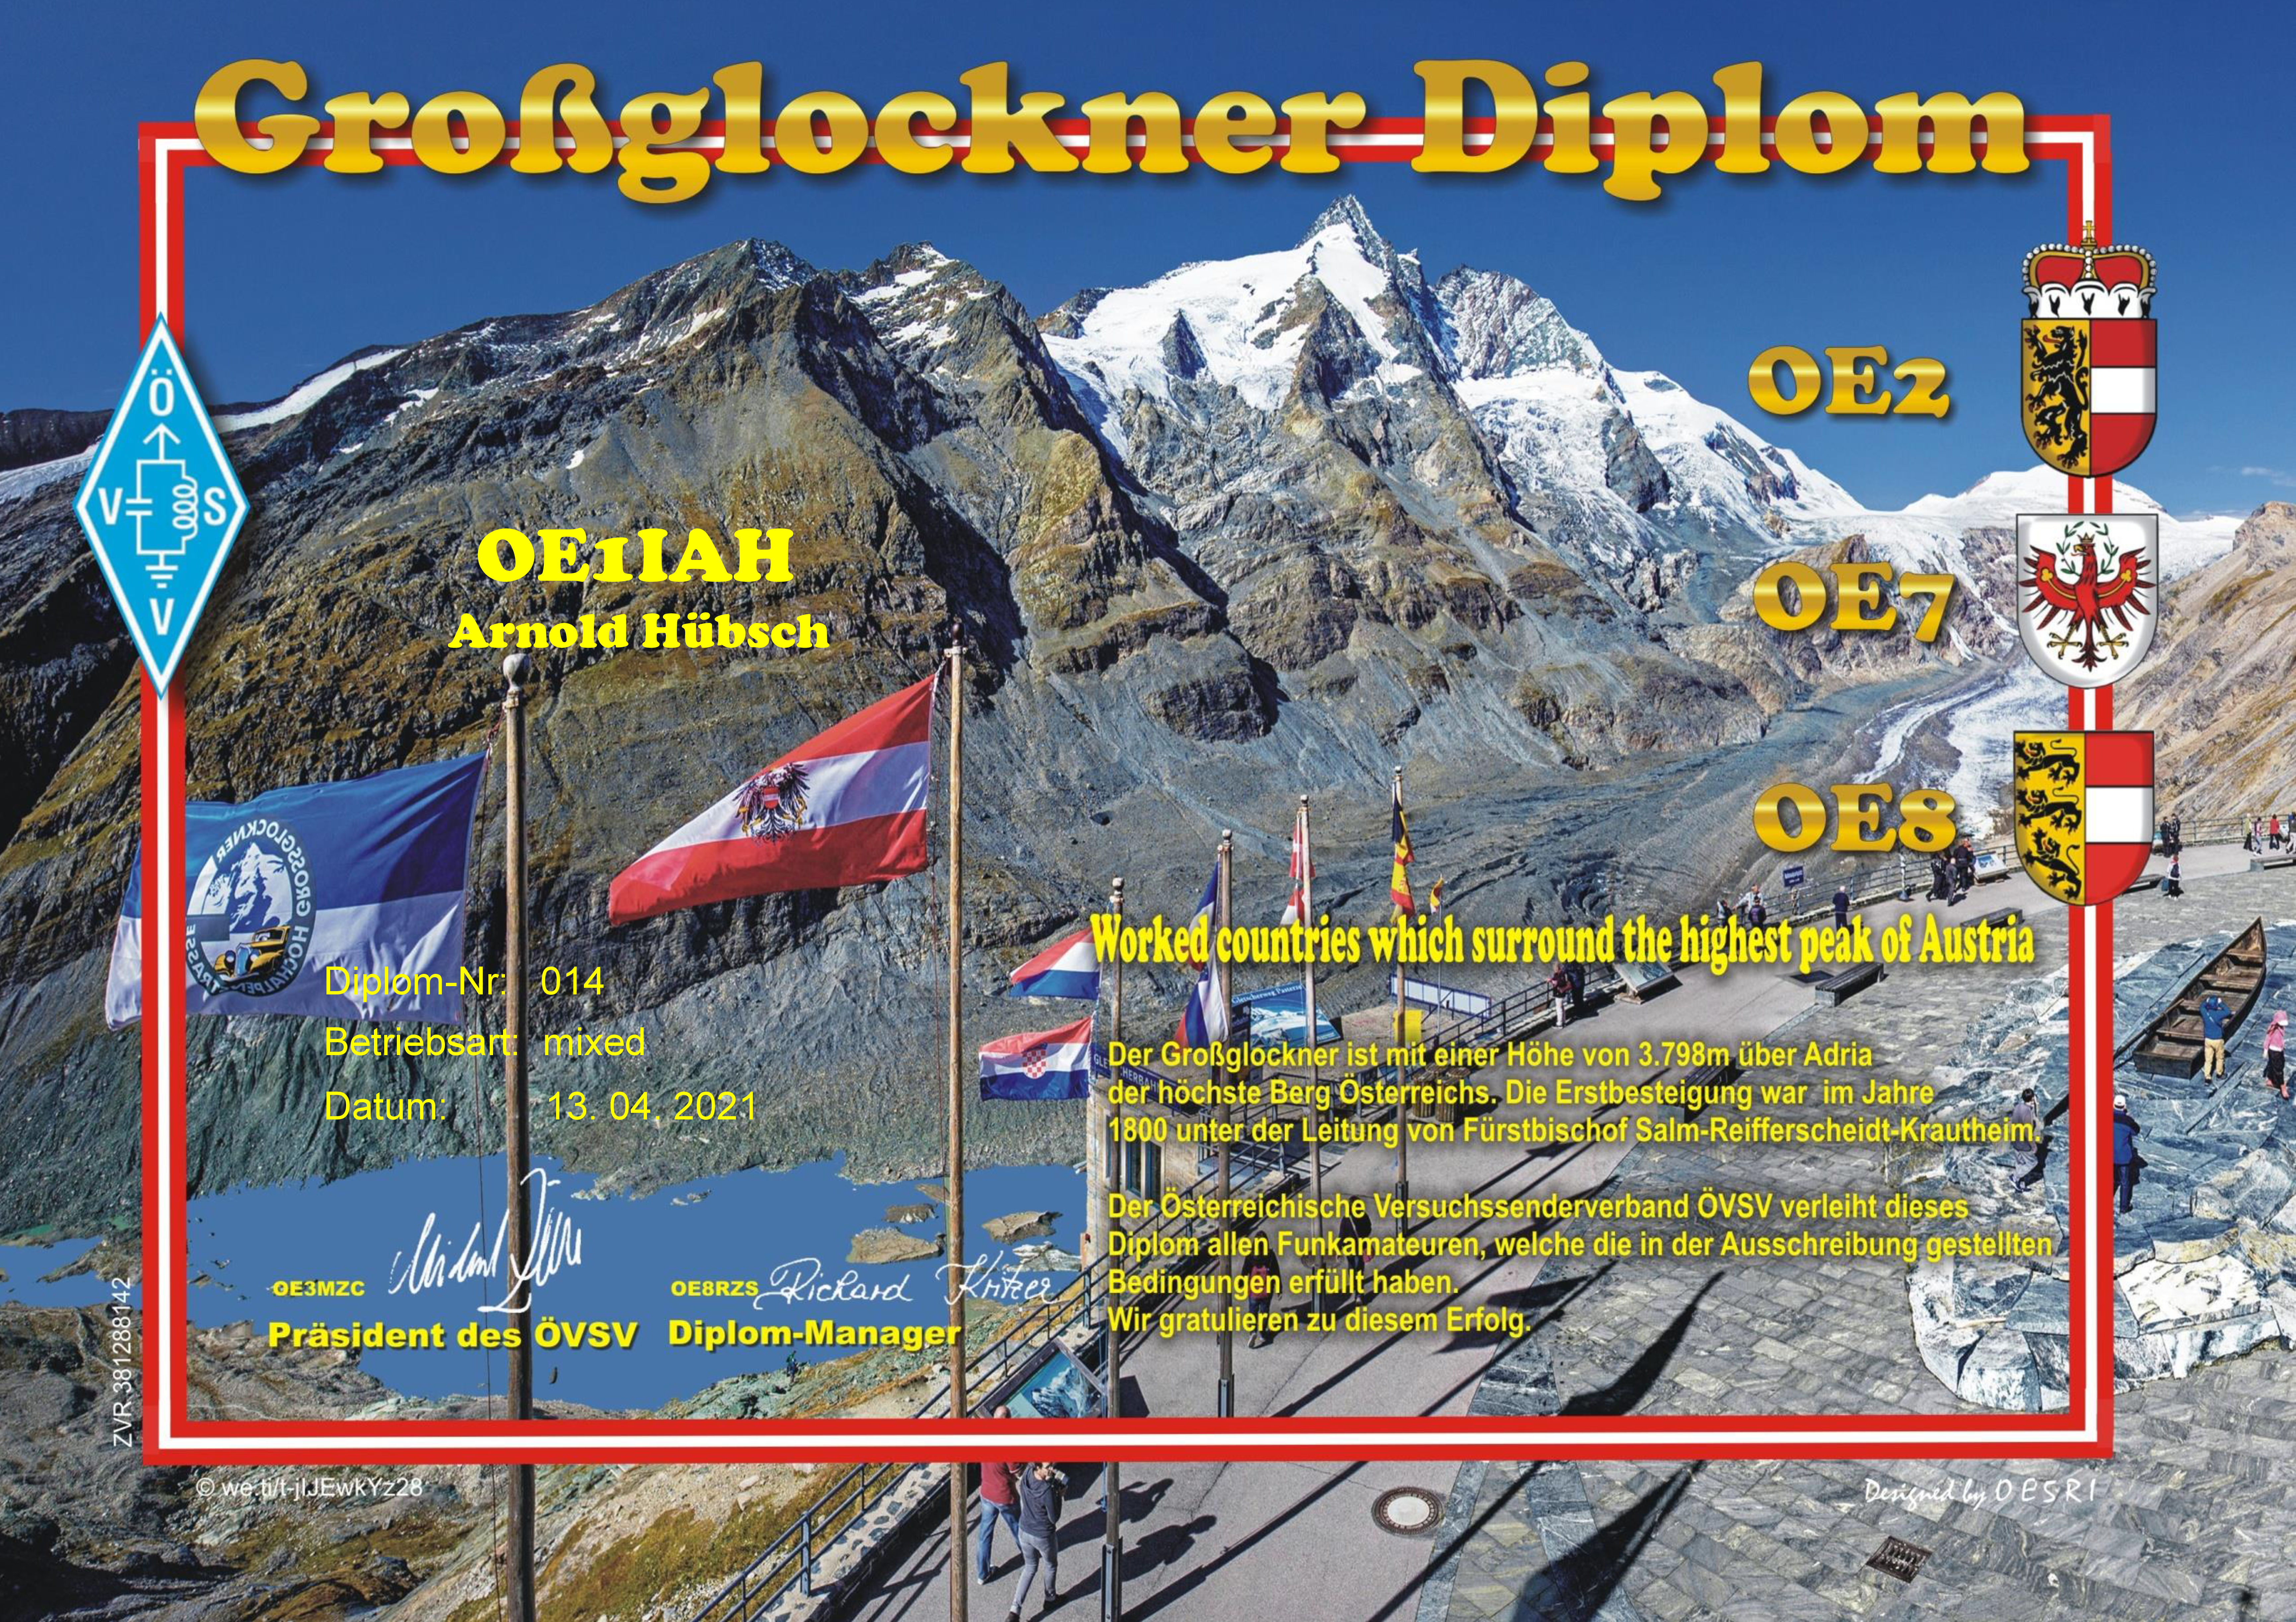 Grossglockner-Diplom